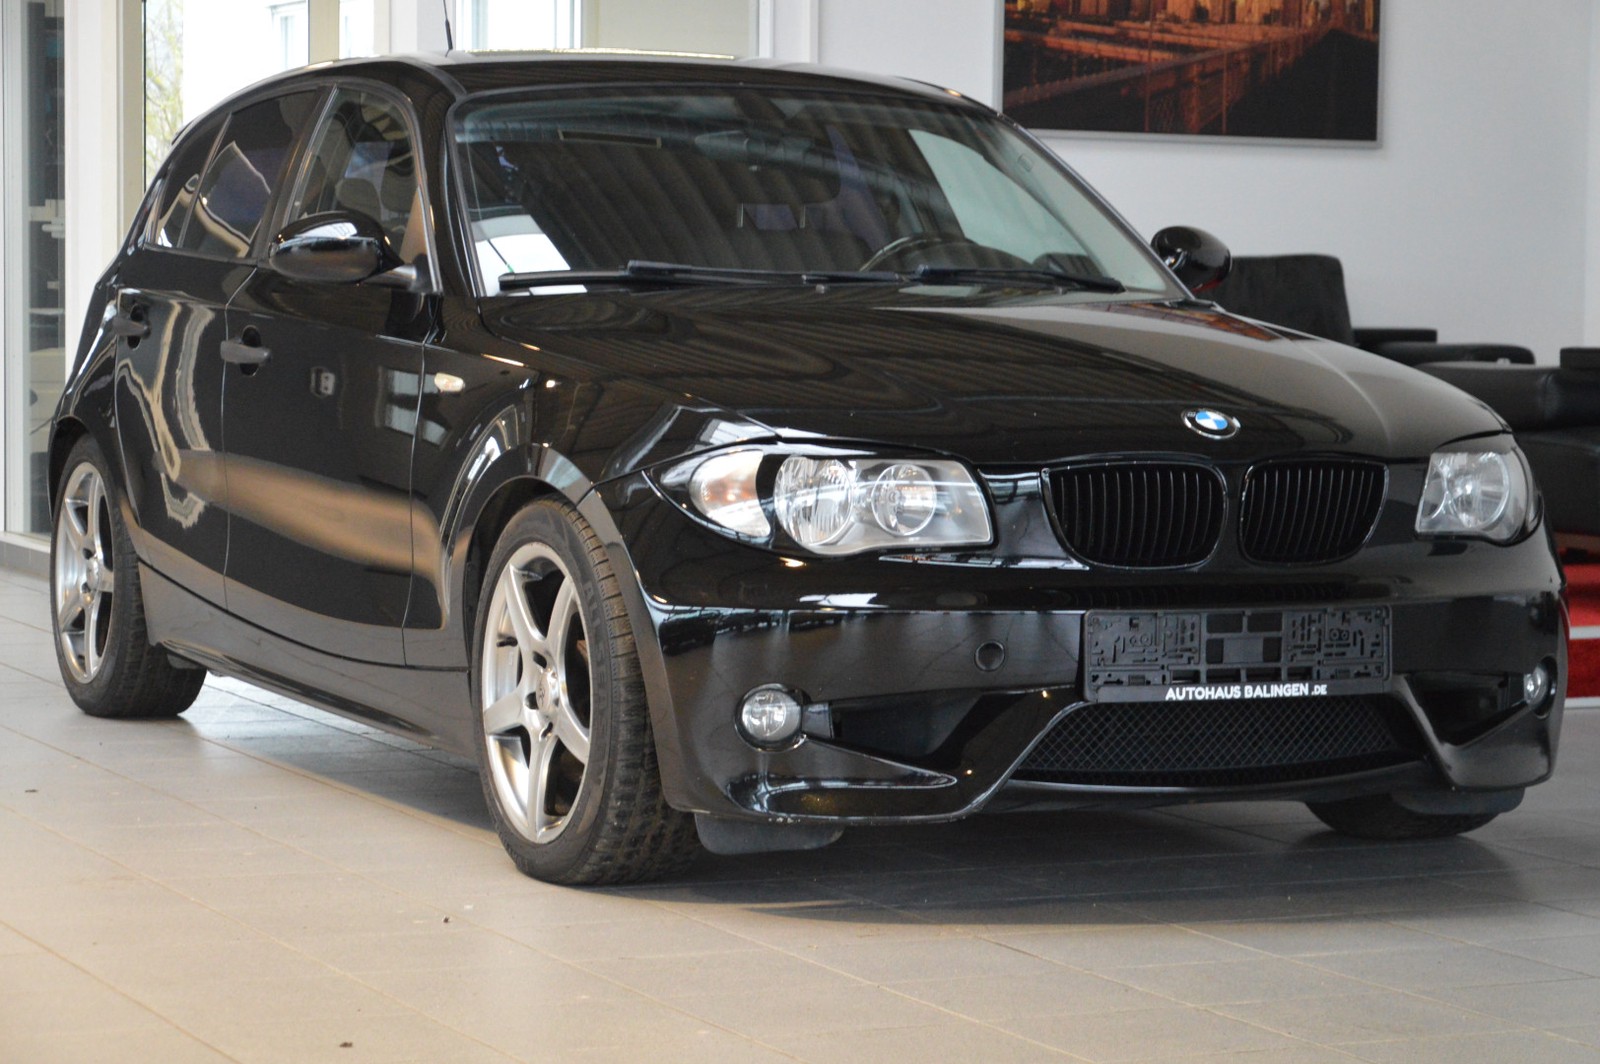 BMW 116 i gebraucht kaufen in Balingen Preis 4990 eur